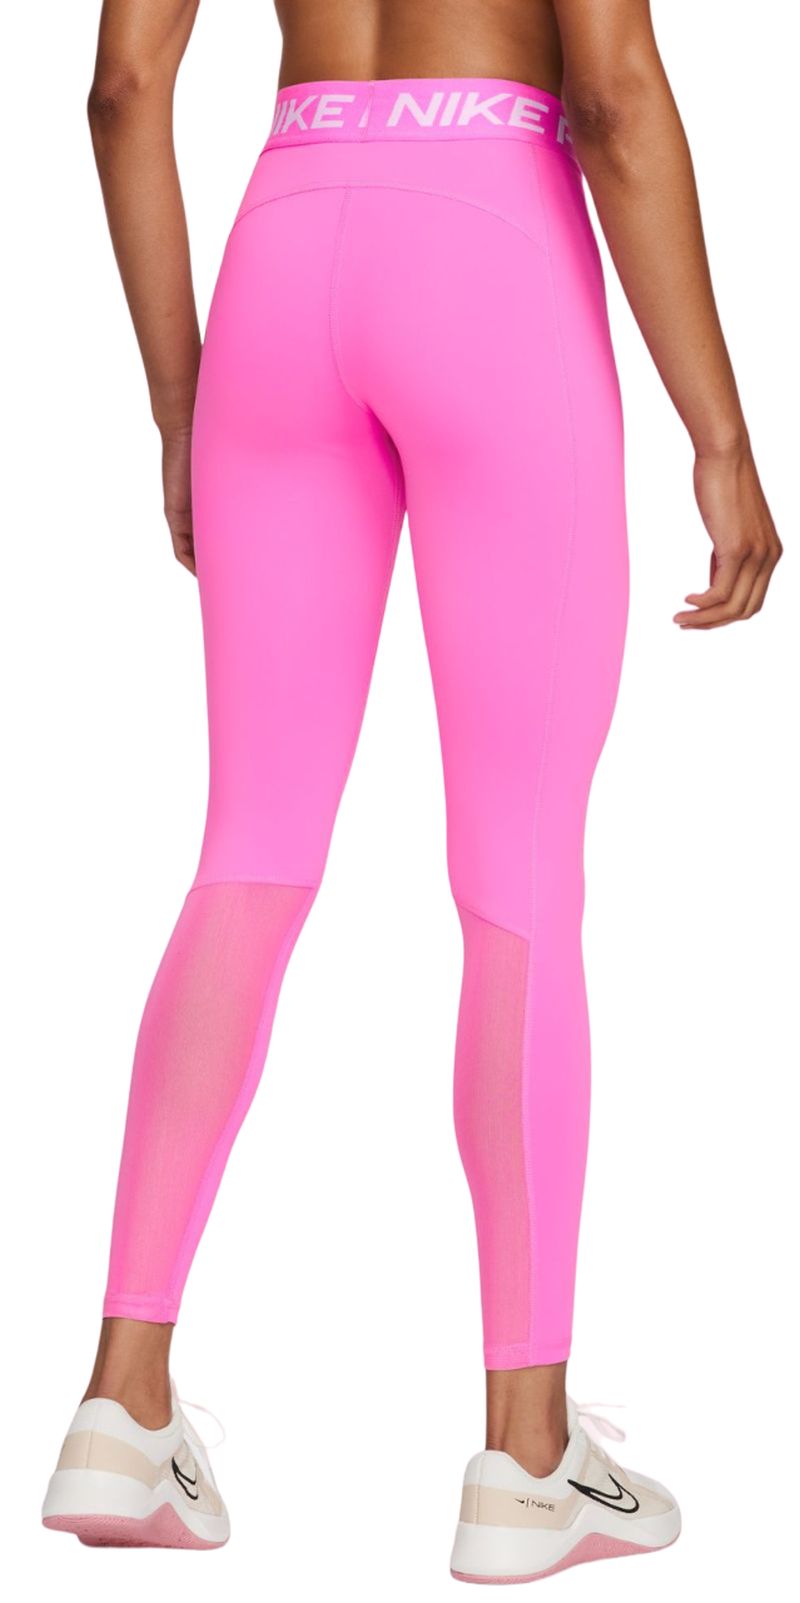 Women's leggings Nike Pro 365 Tight - playful pink/white